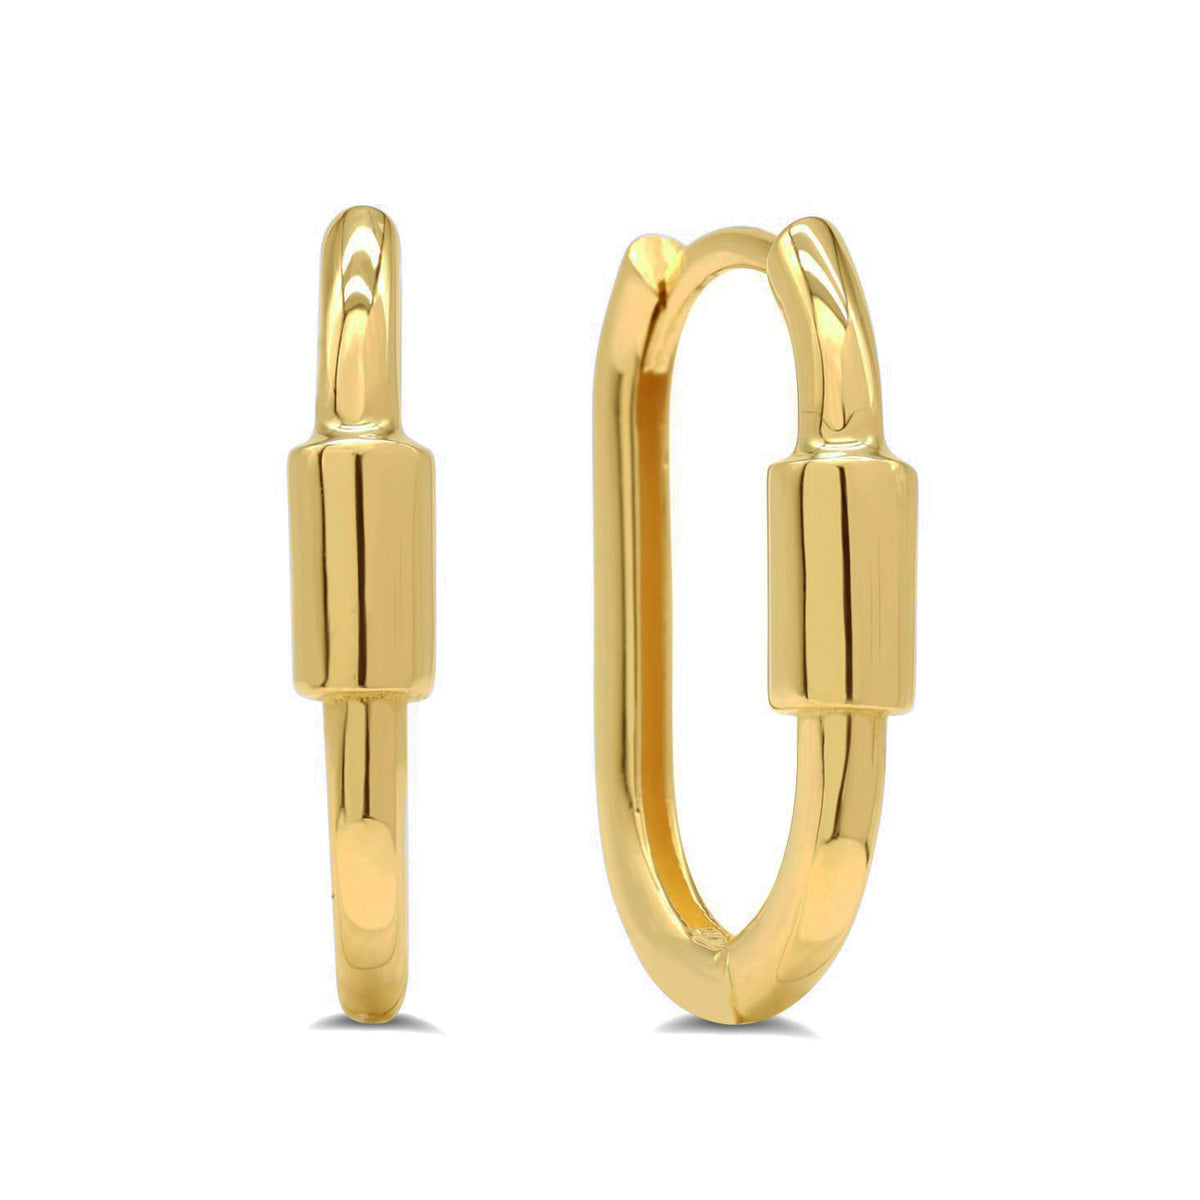 EHG0210, Gold Earrings, Huggies